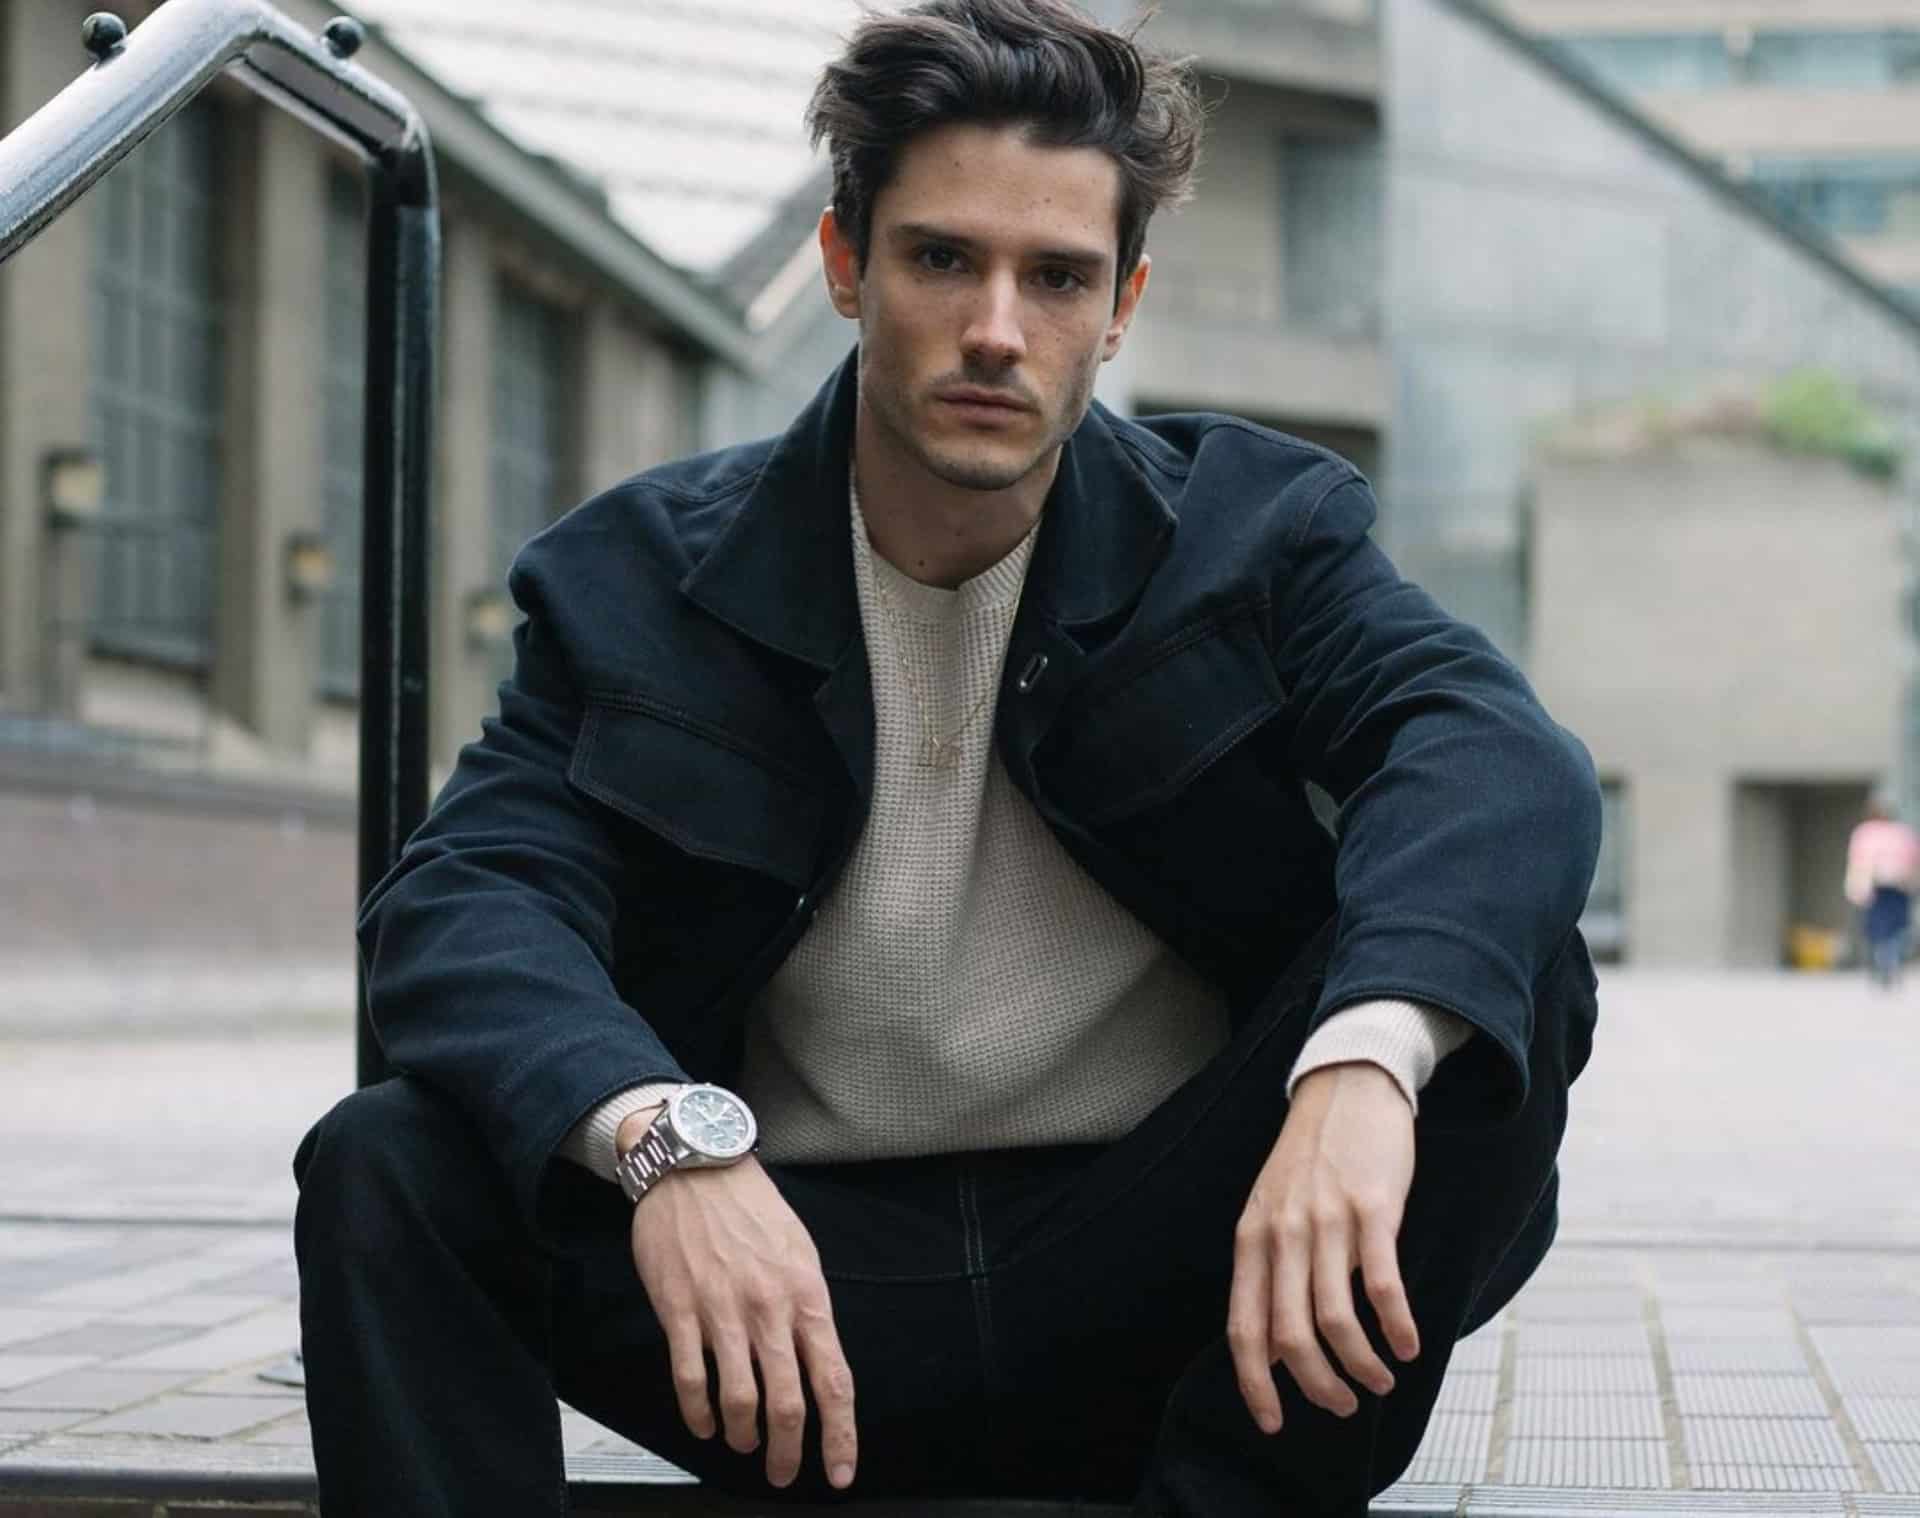 Diego Barrueco uno de los modelos más seguidos en Instagram